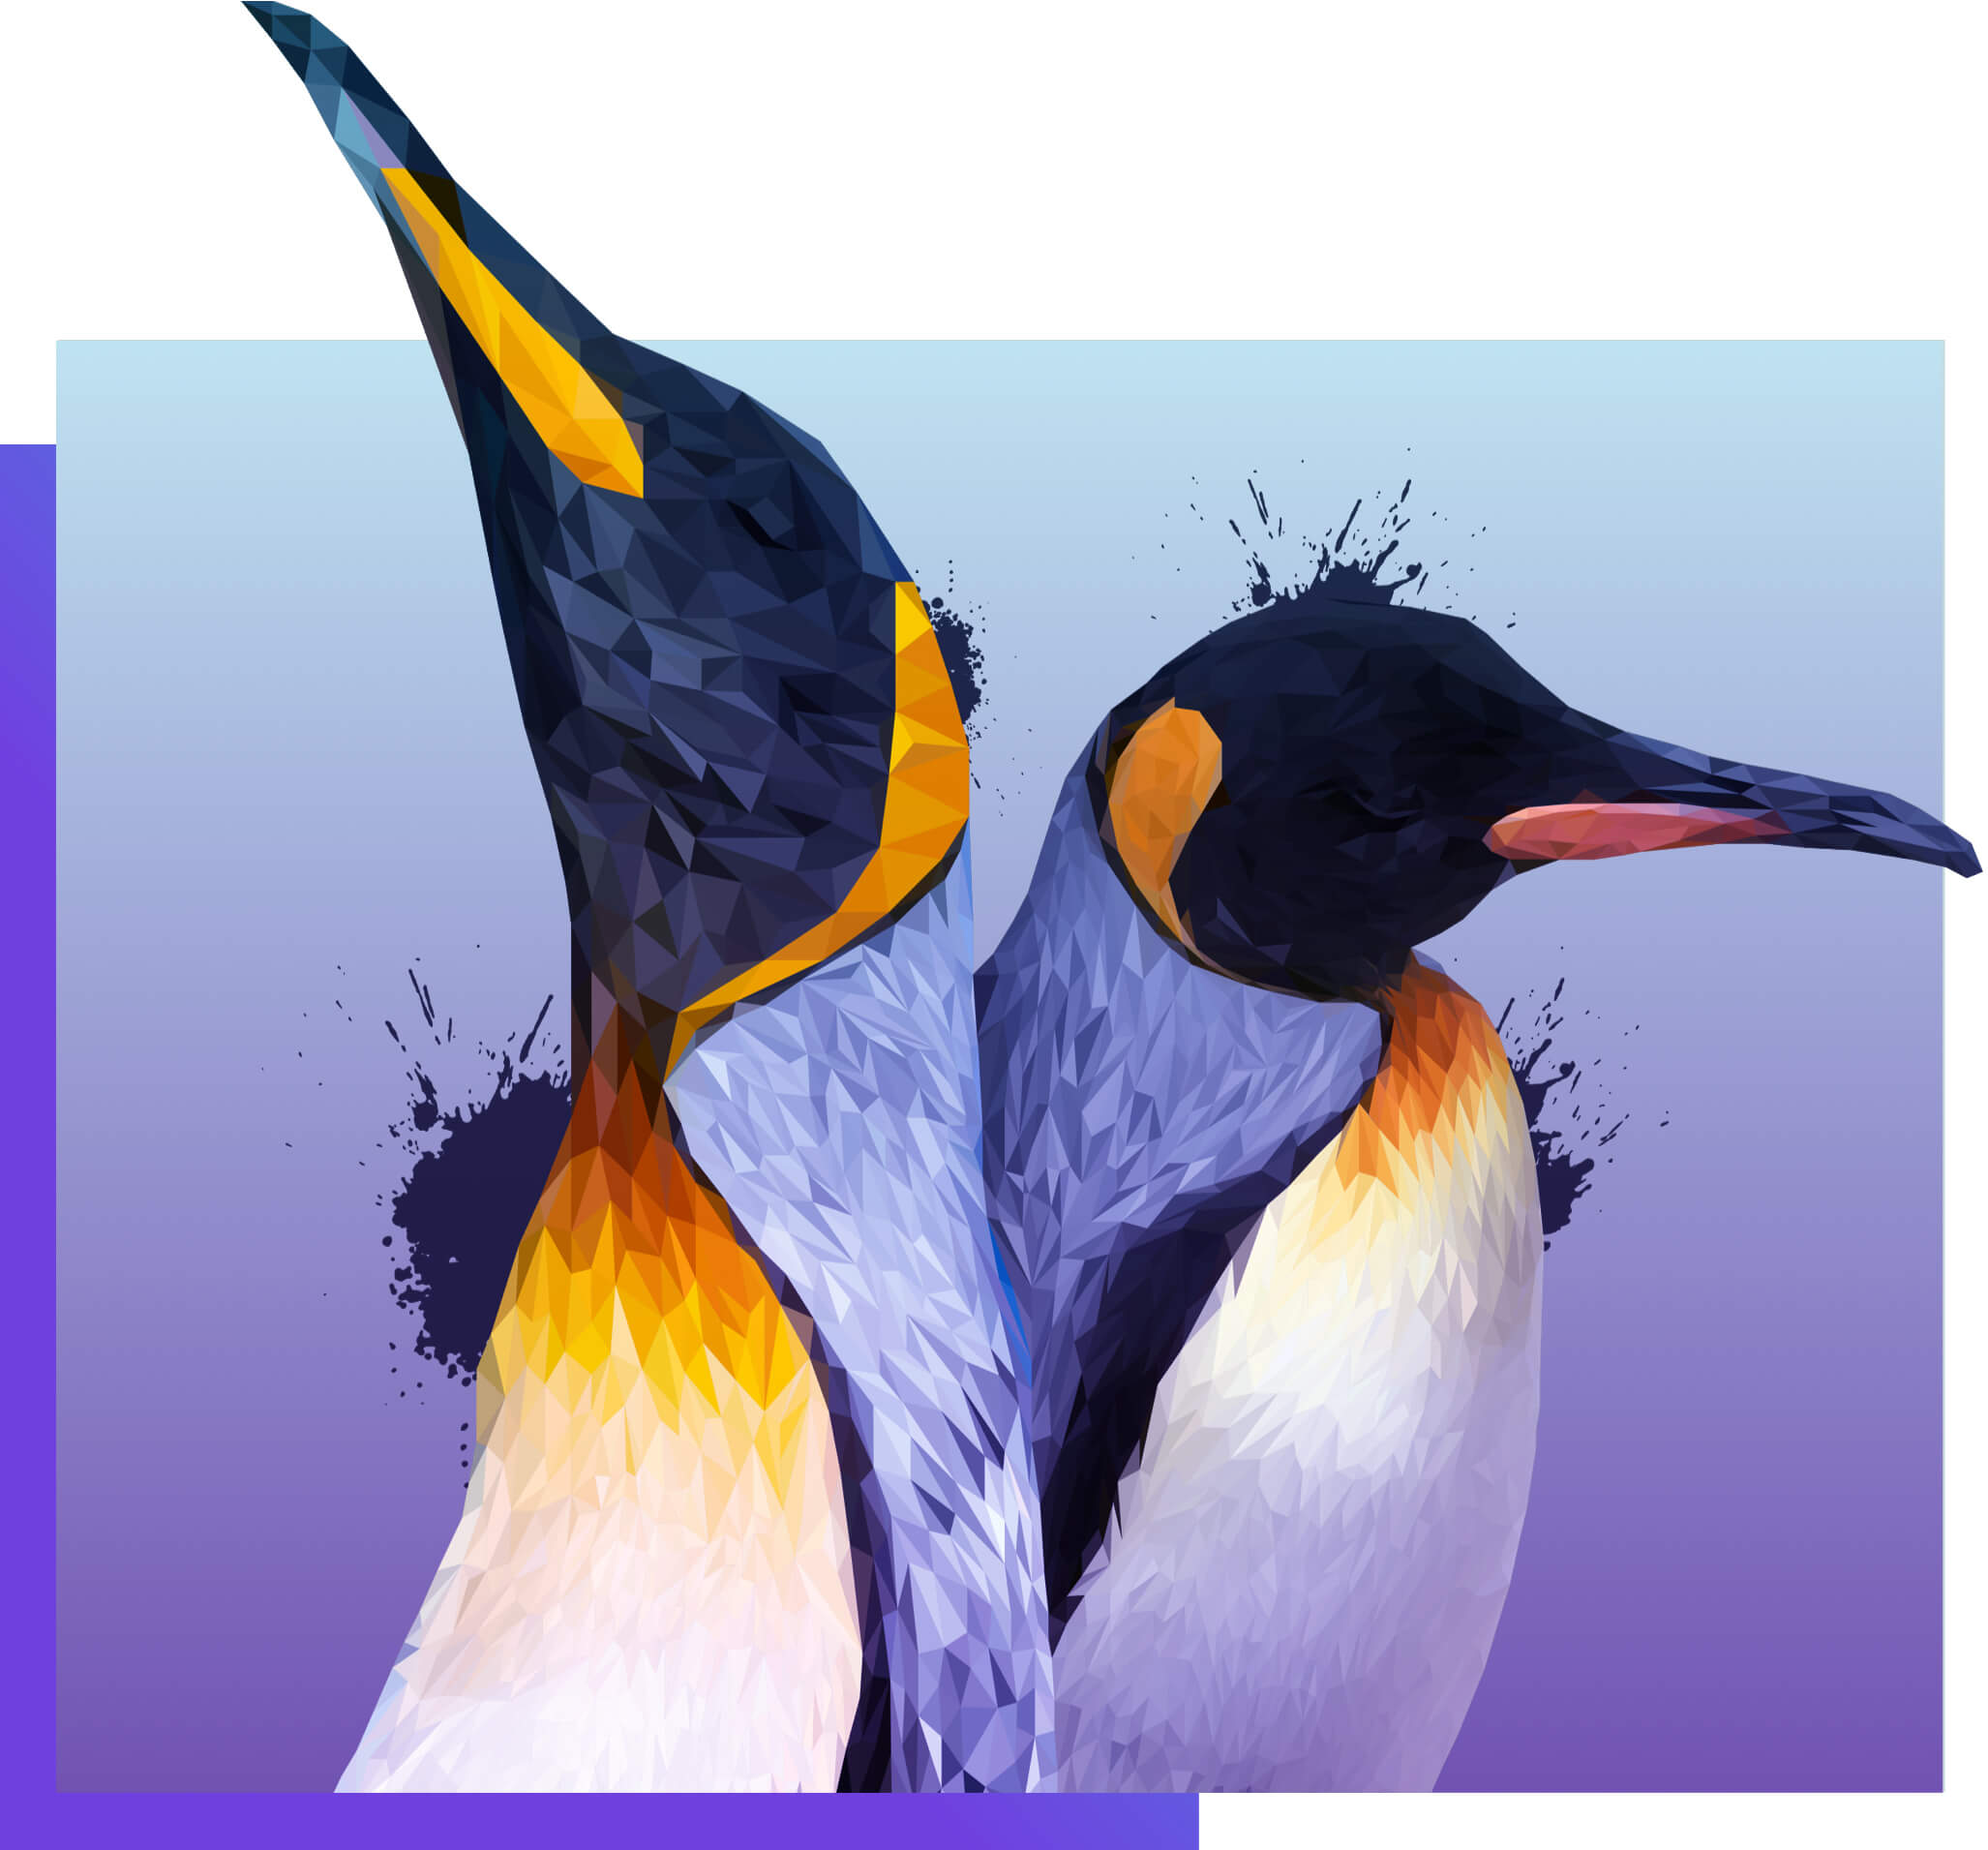 Custom illustration of two penguins